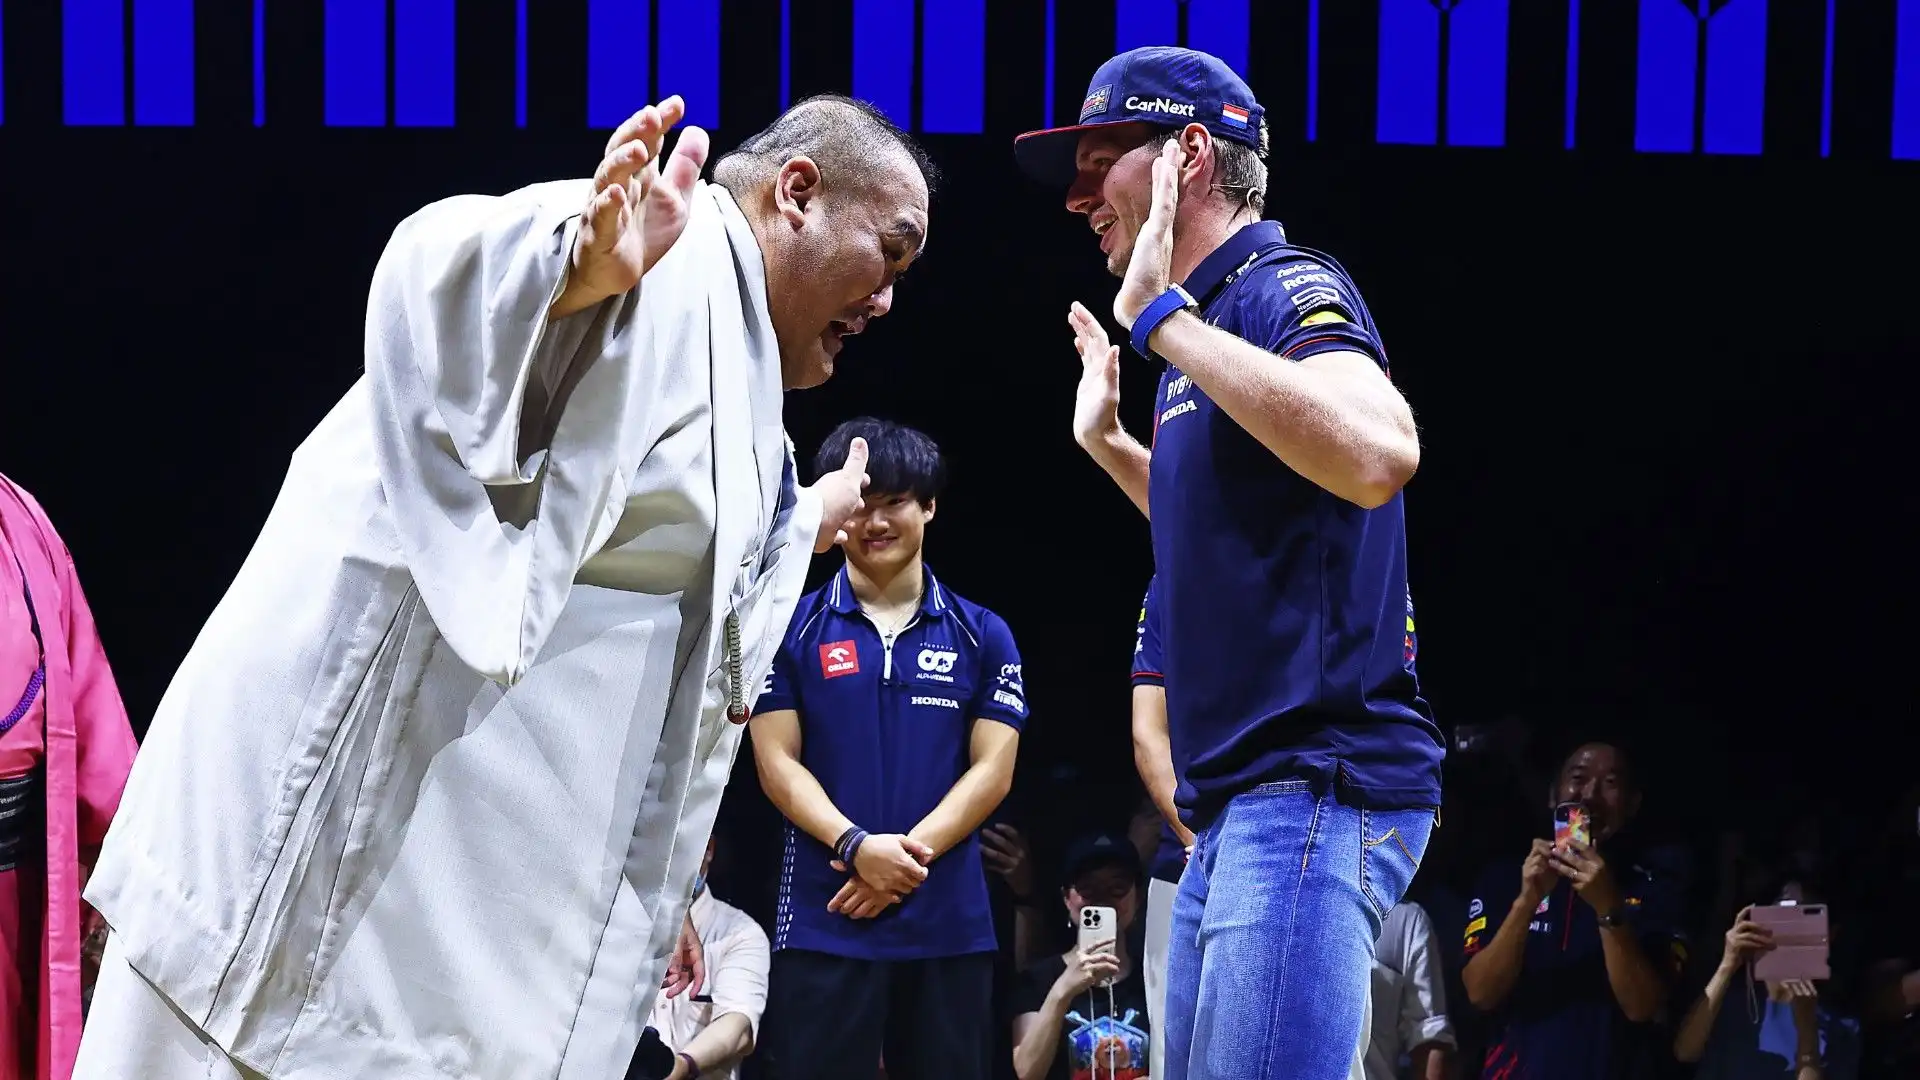 Il campione della Red Bull si è cimentato nel sumo